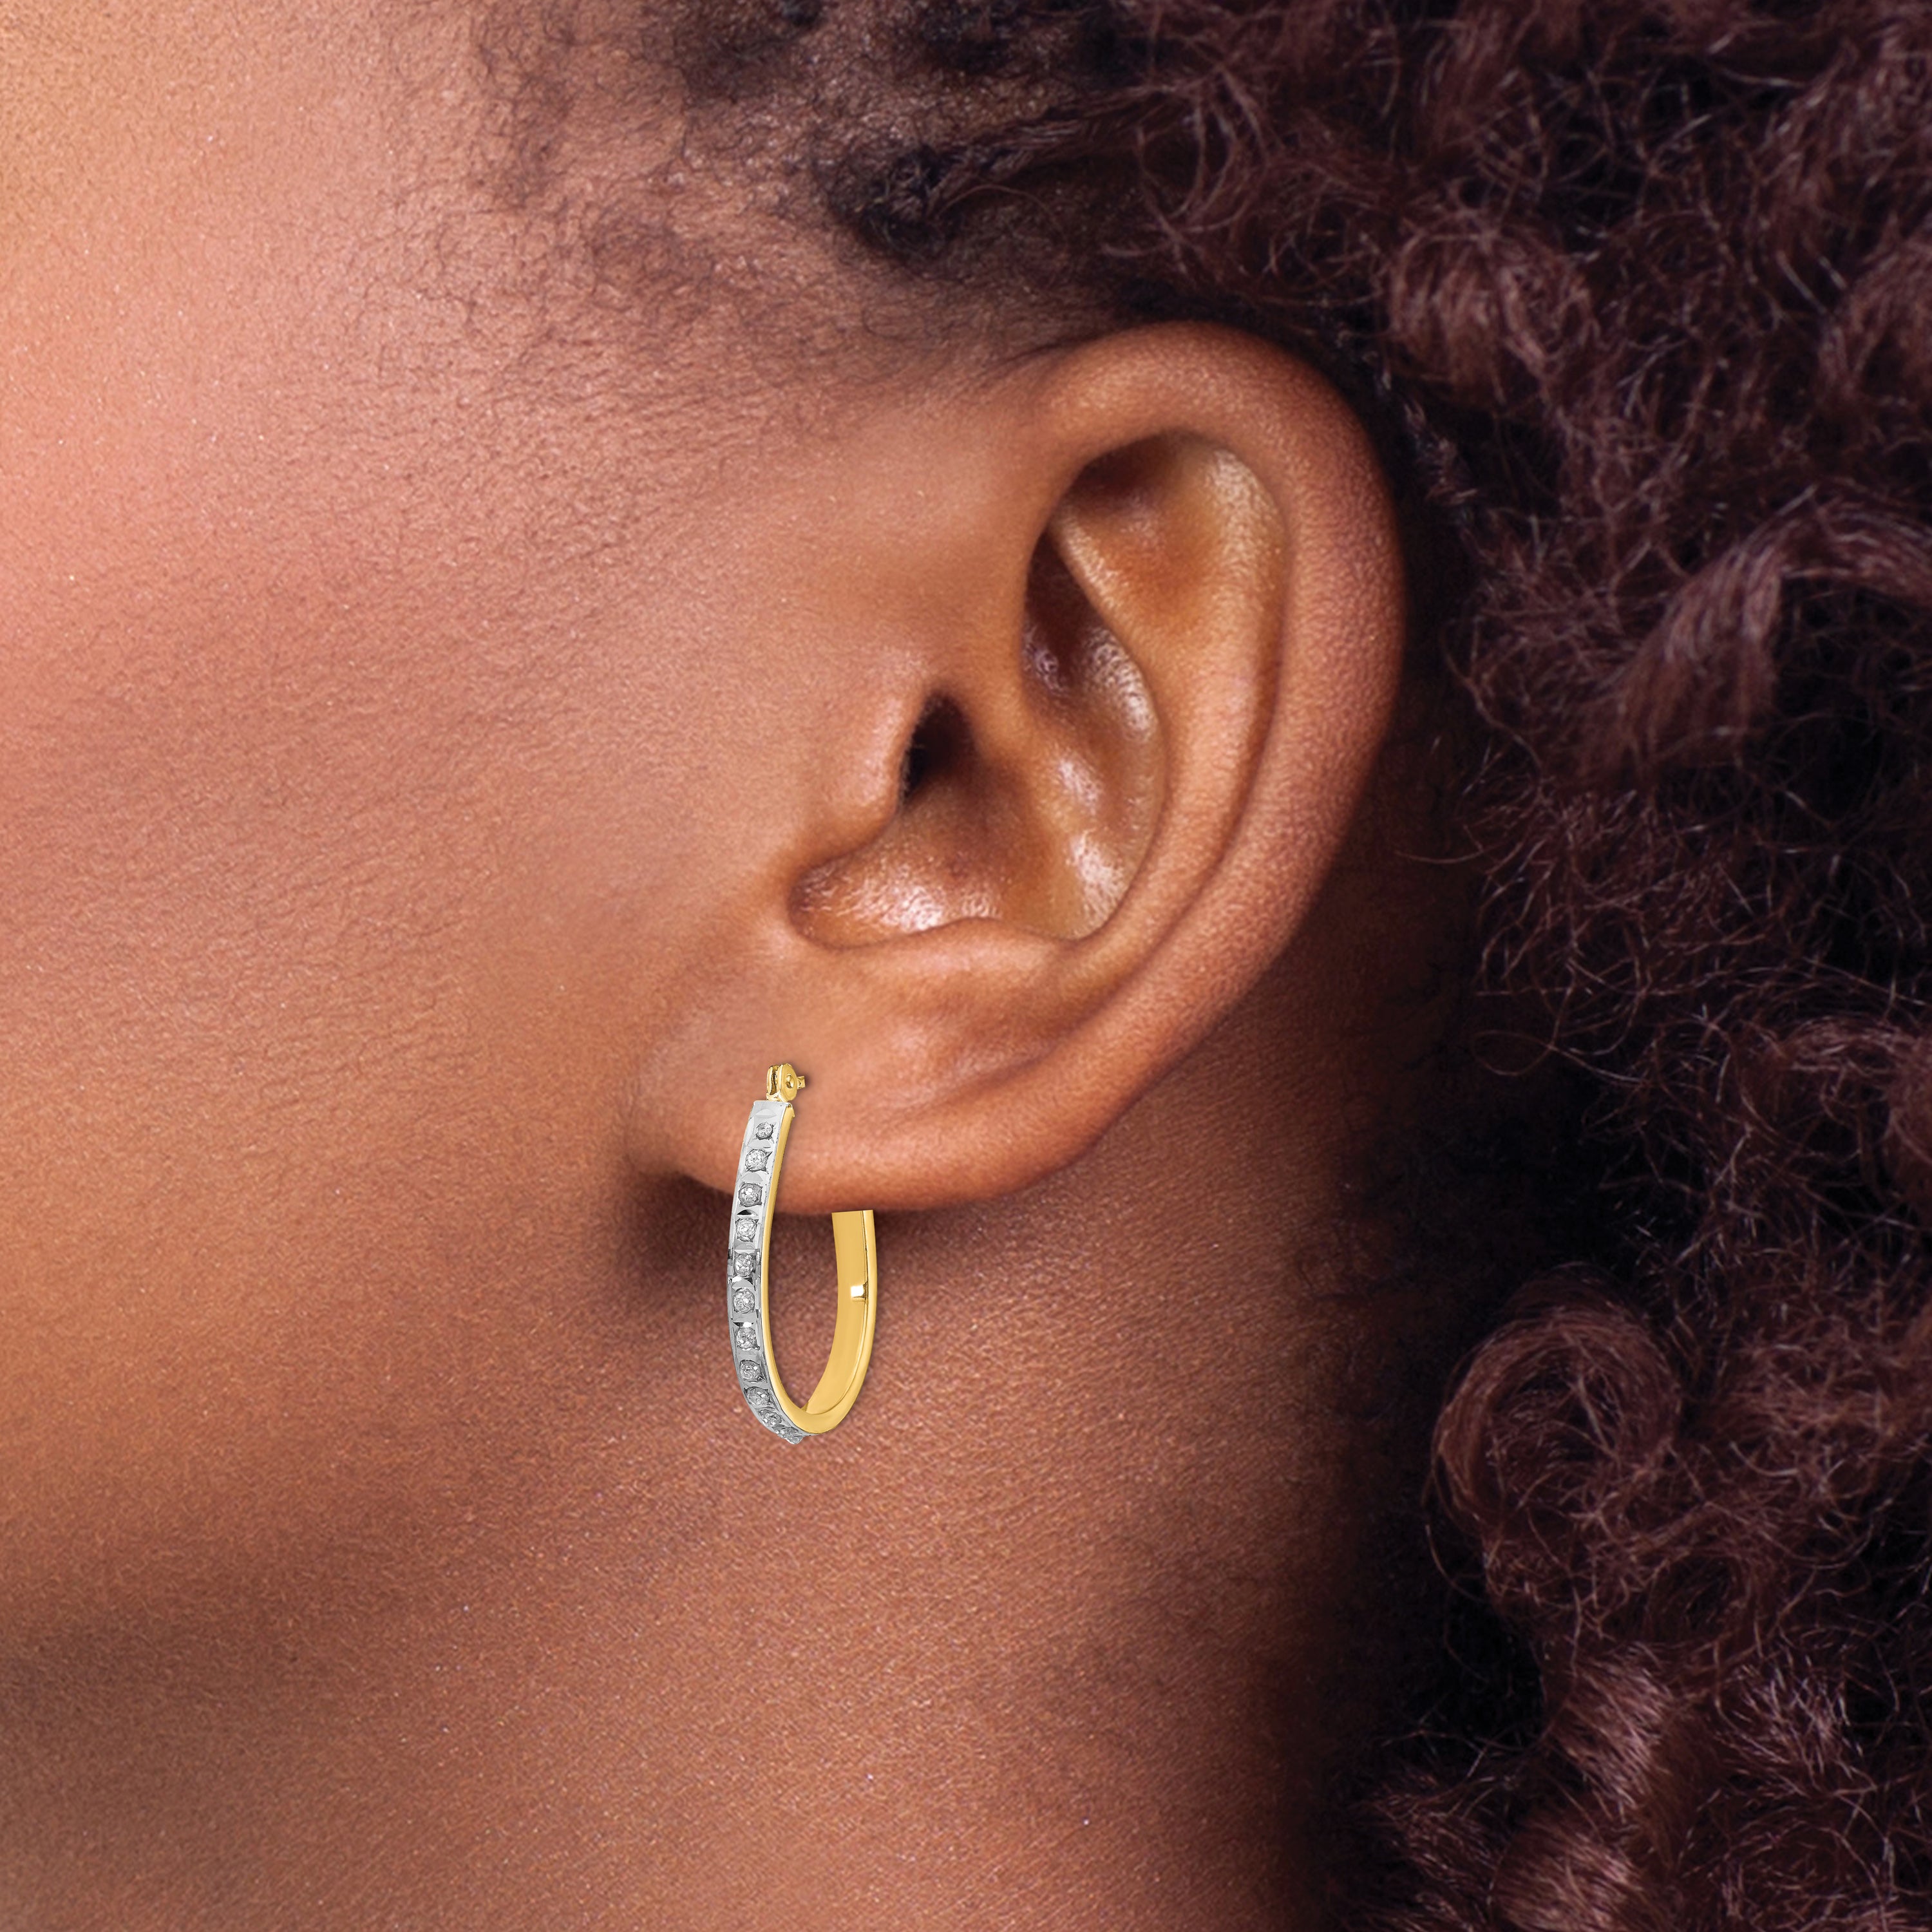 14k Yellow & Rhodium Diamond Fascination Oval Hinged Hoop Earrings